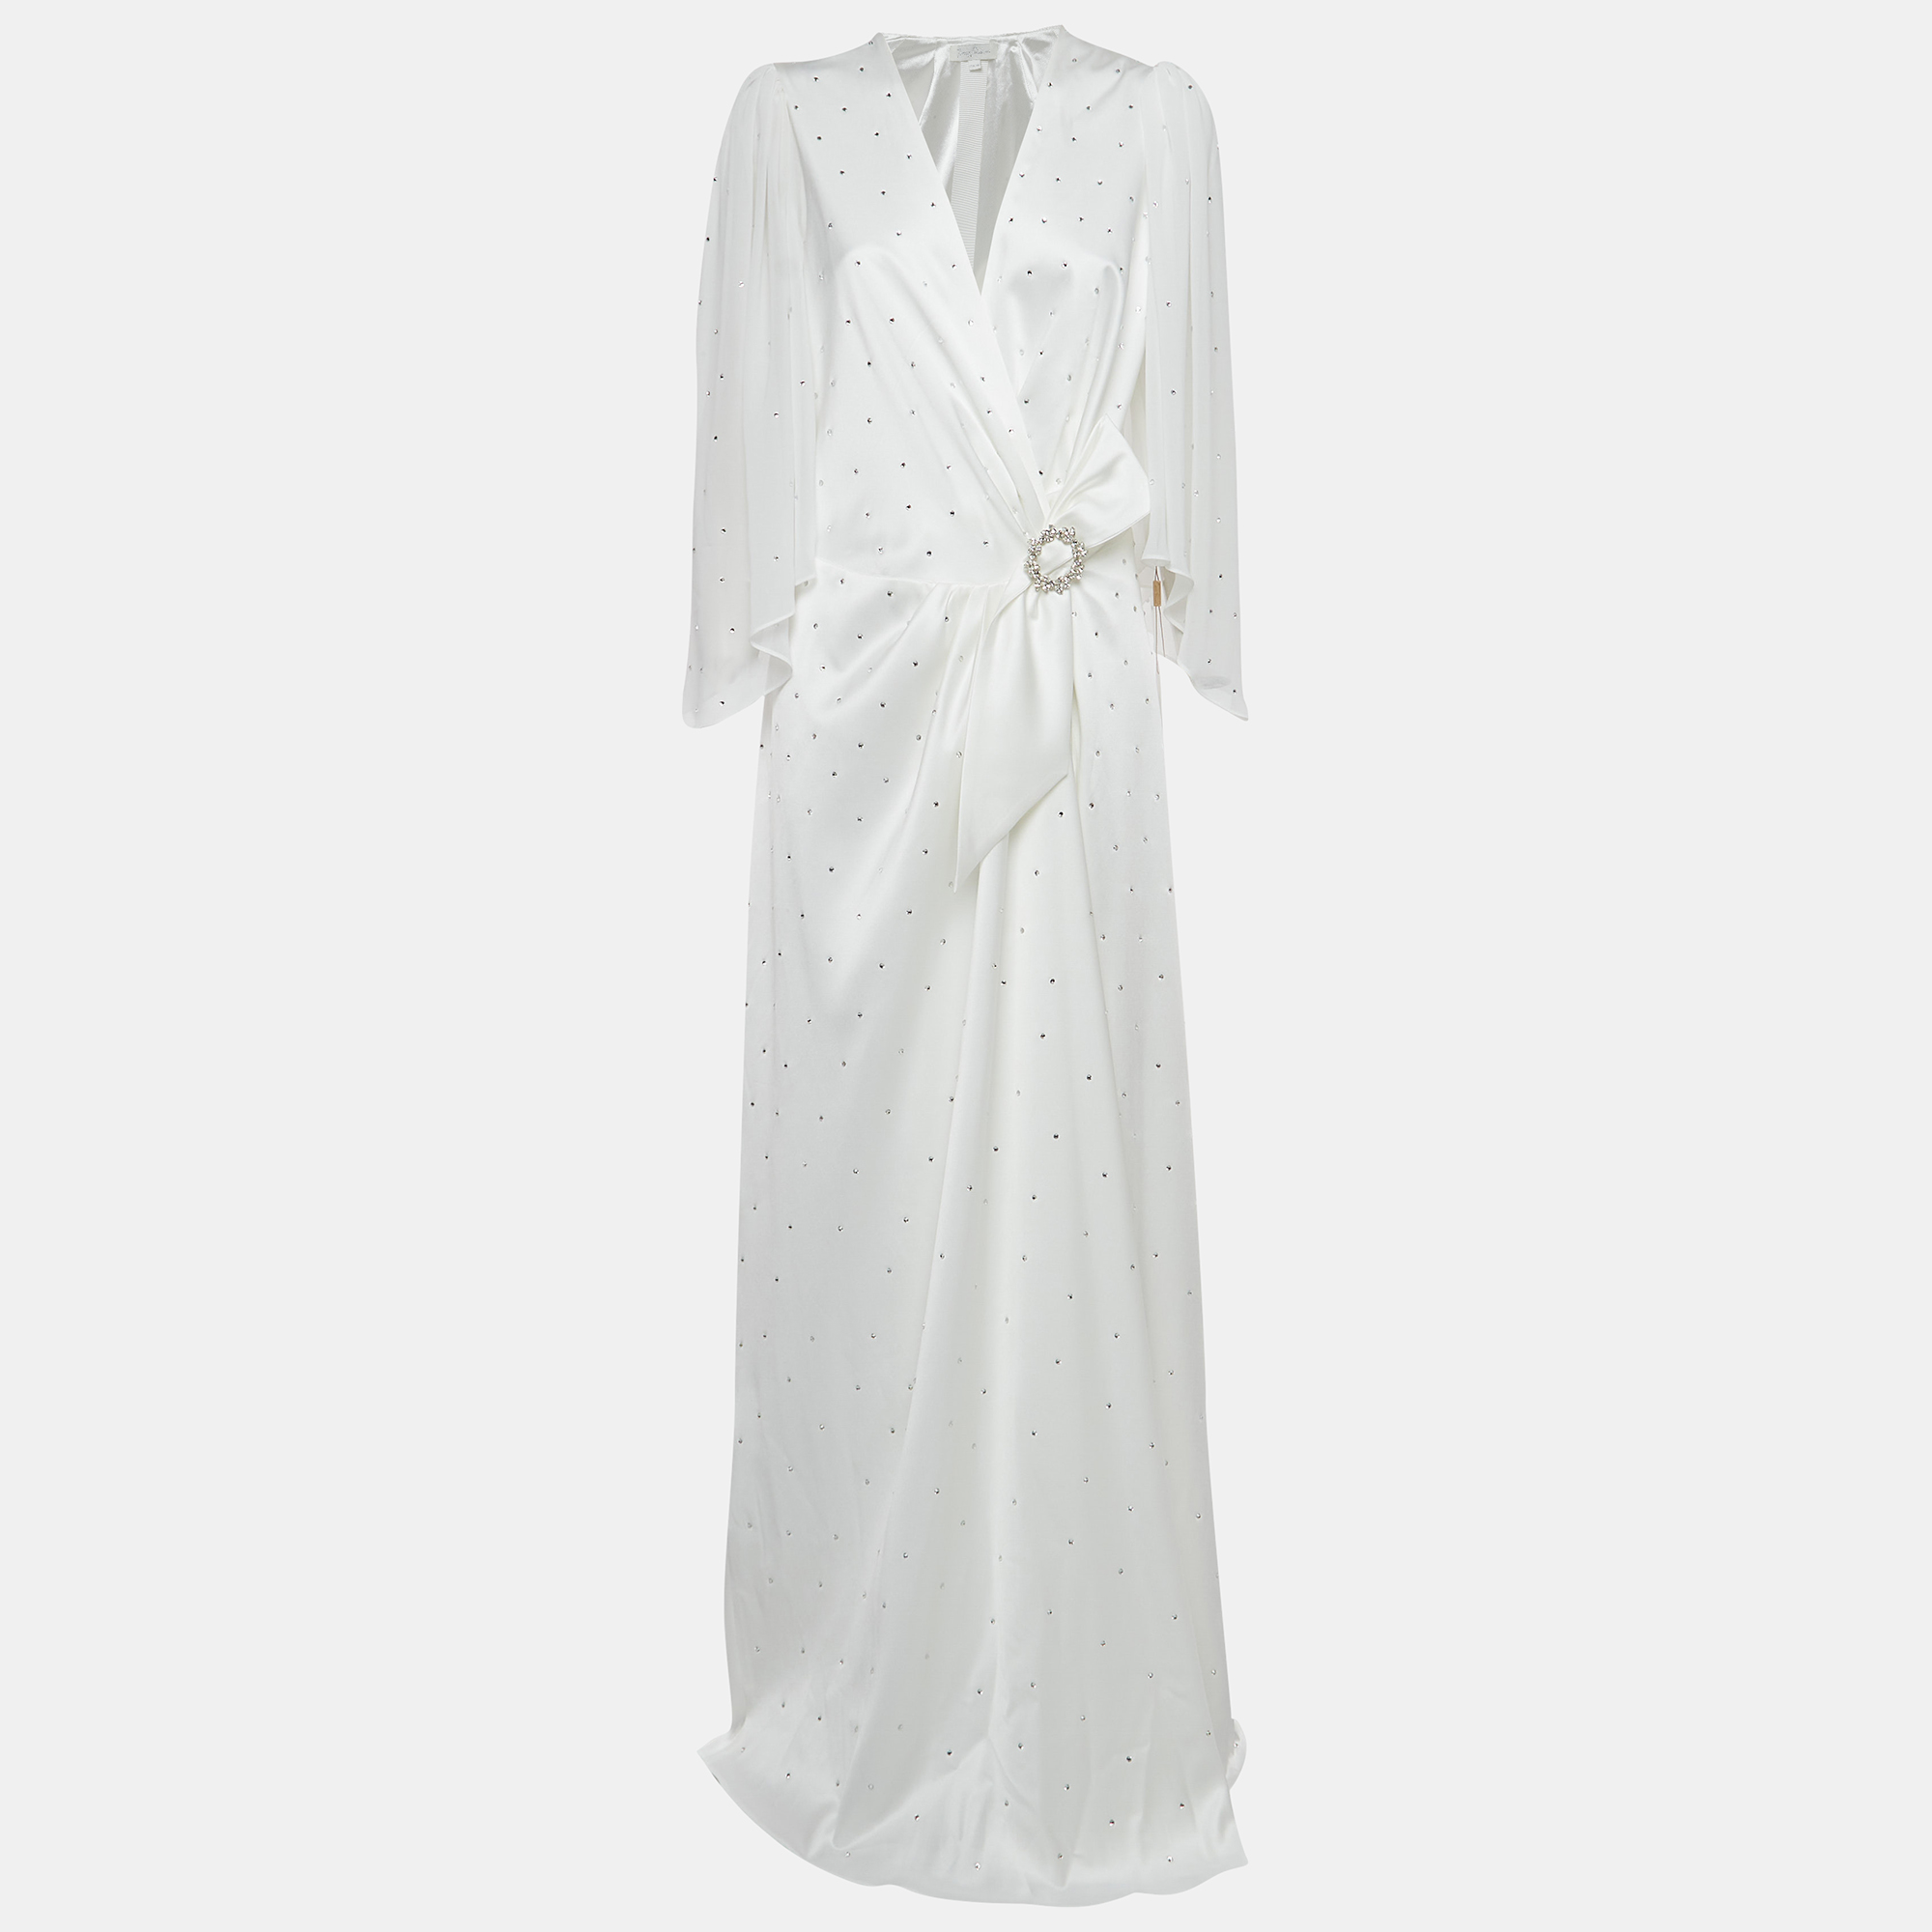 

Jenny Packham Ivory White Satin Crystal Embellished Bridal Gown